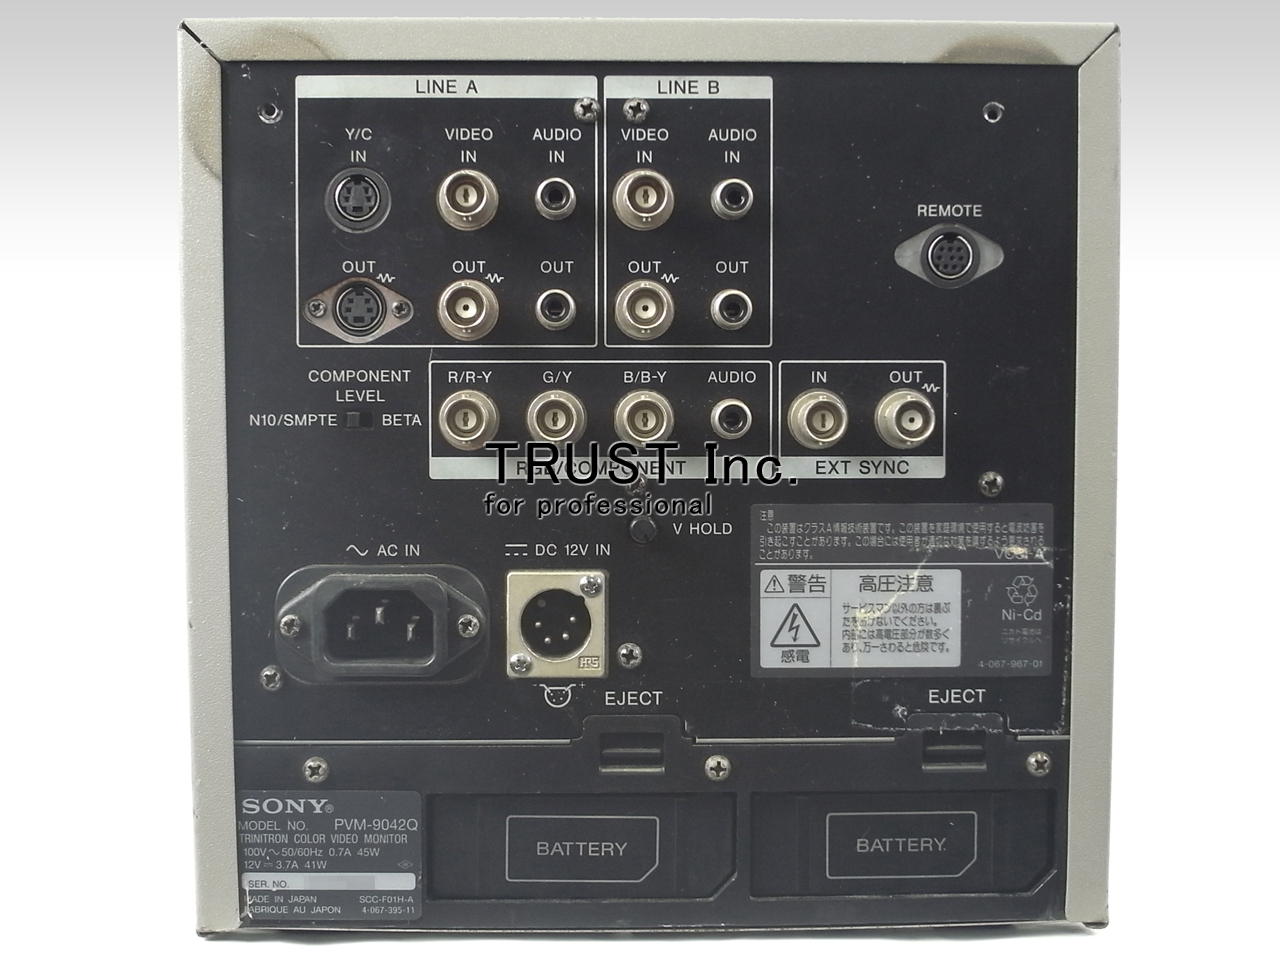 PVM-9045Q 9型トリニトロンカラービデオピクチャーモニター①